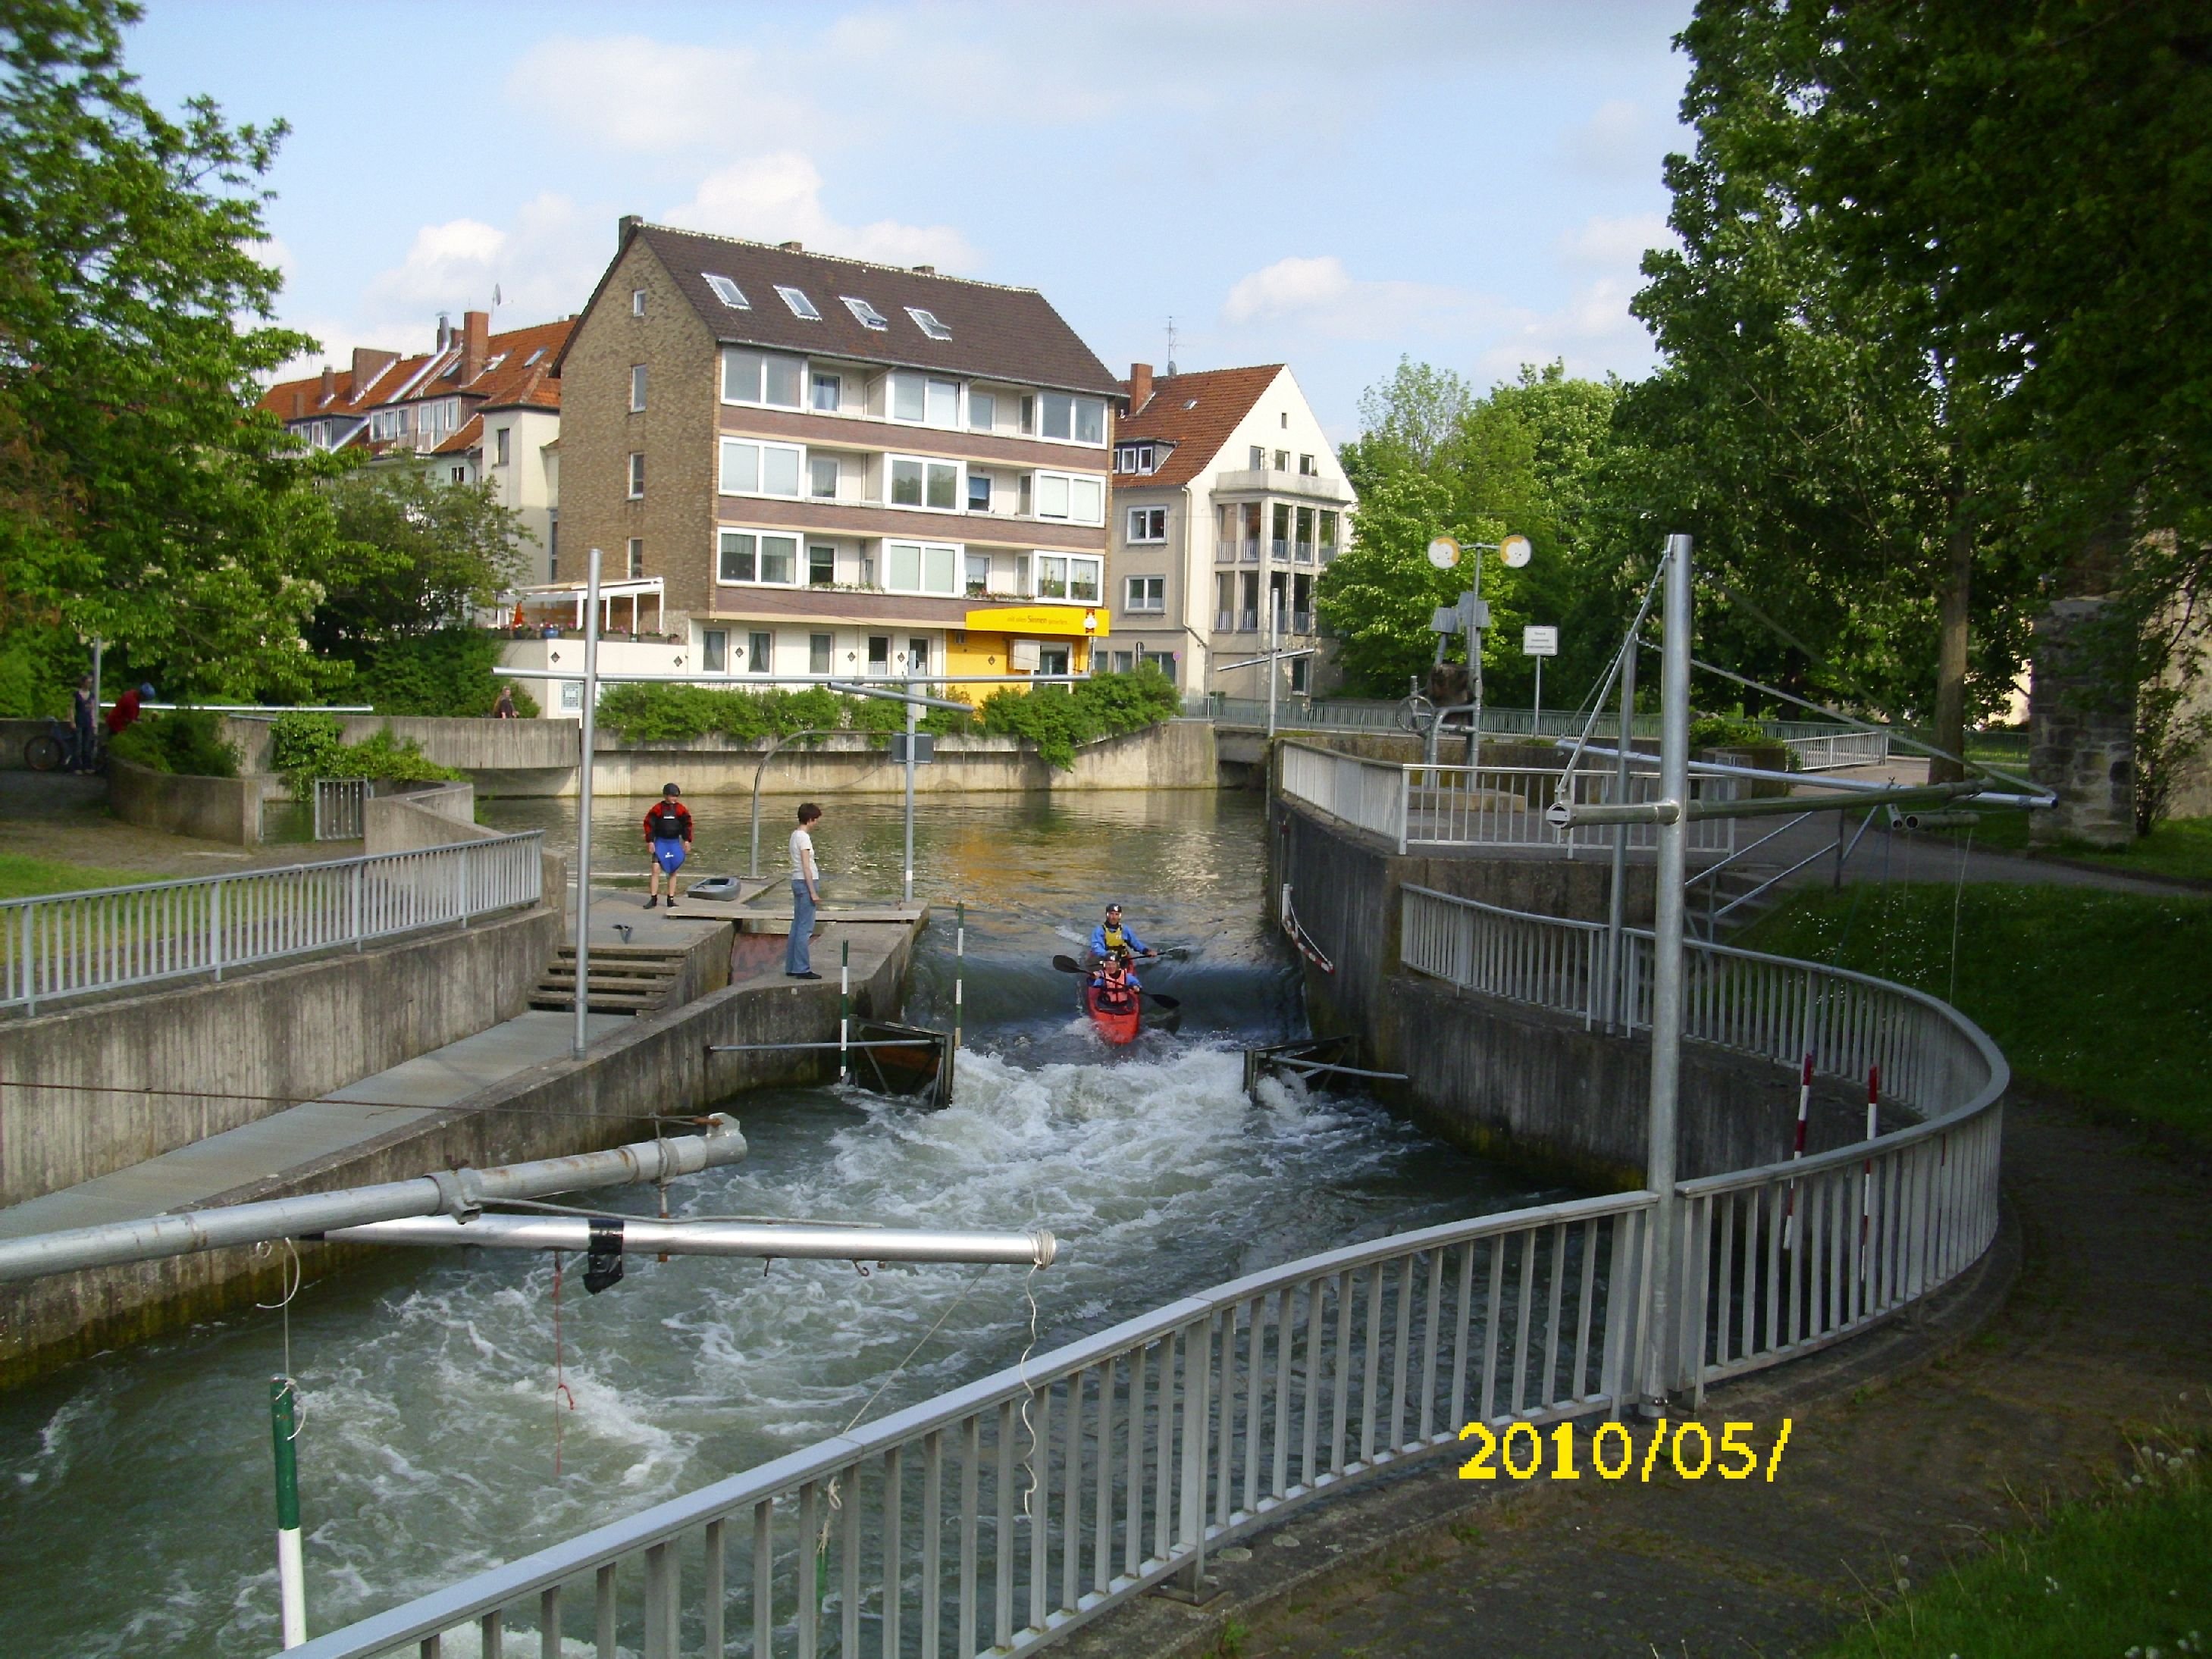 Farbfoto: Der Fluß die Innerste in Hildesheim am Pfingstsonntag 2010. Fotograf: Kim Hartley.